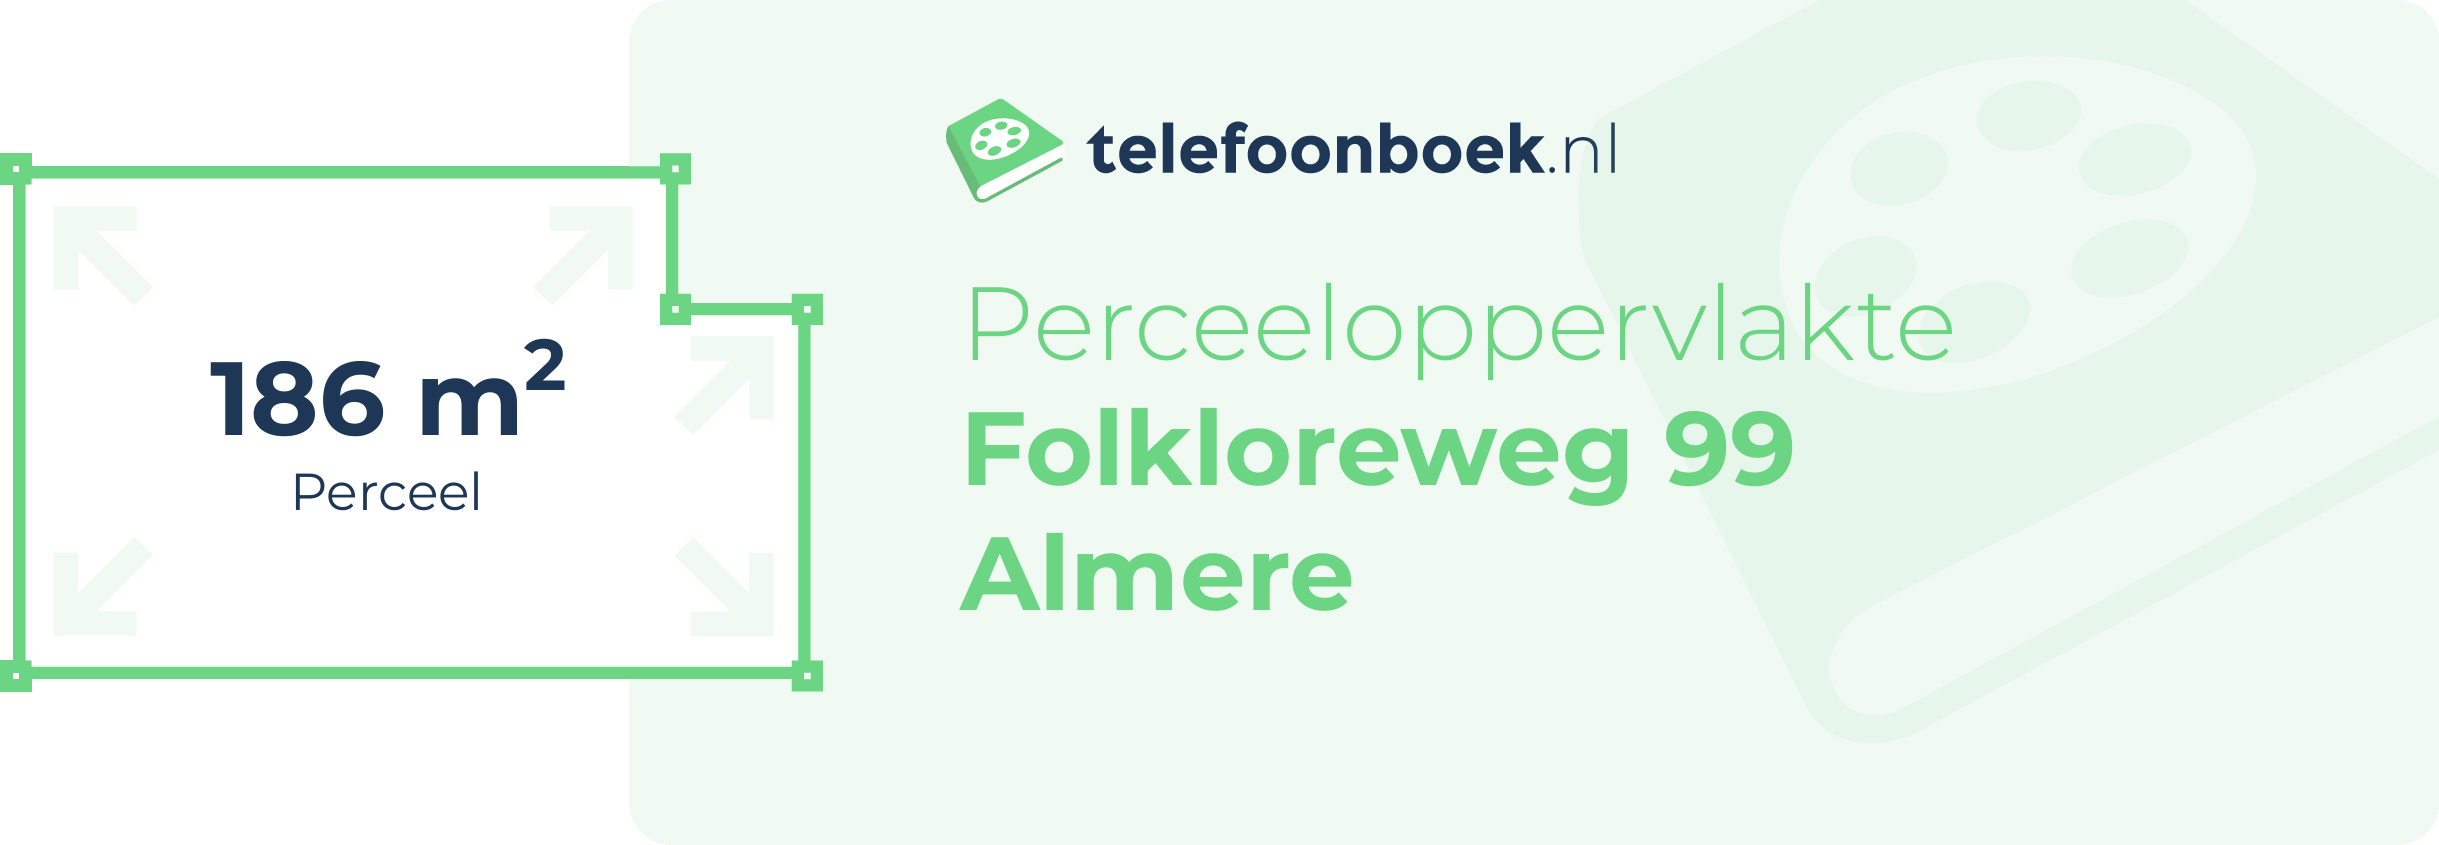 Perceeloppervlakte Folkloreweg 99 Almere